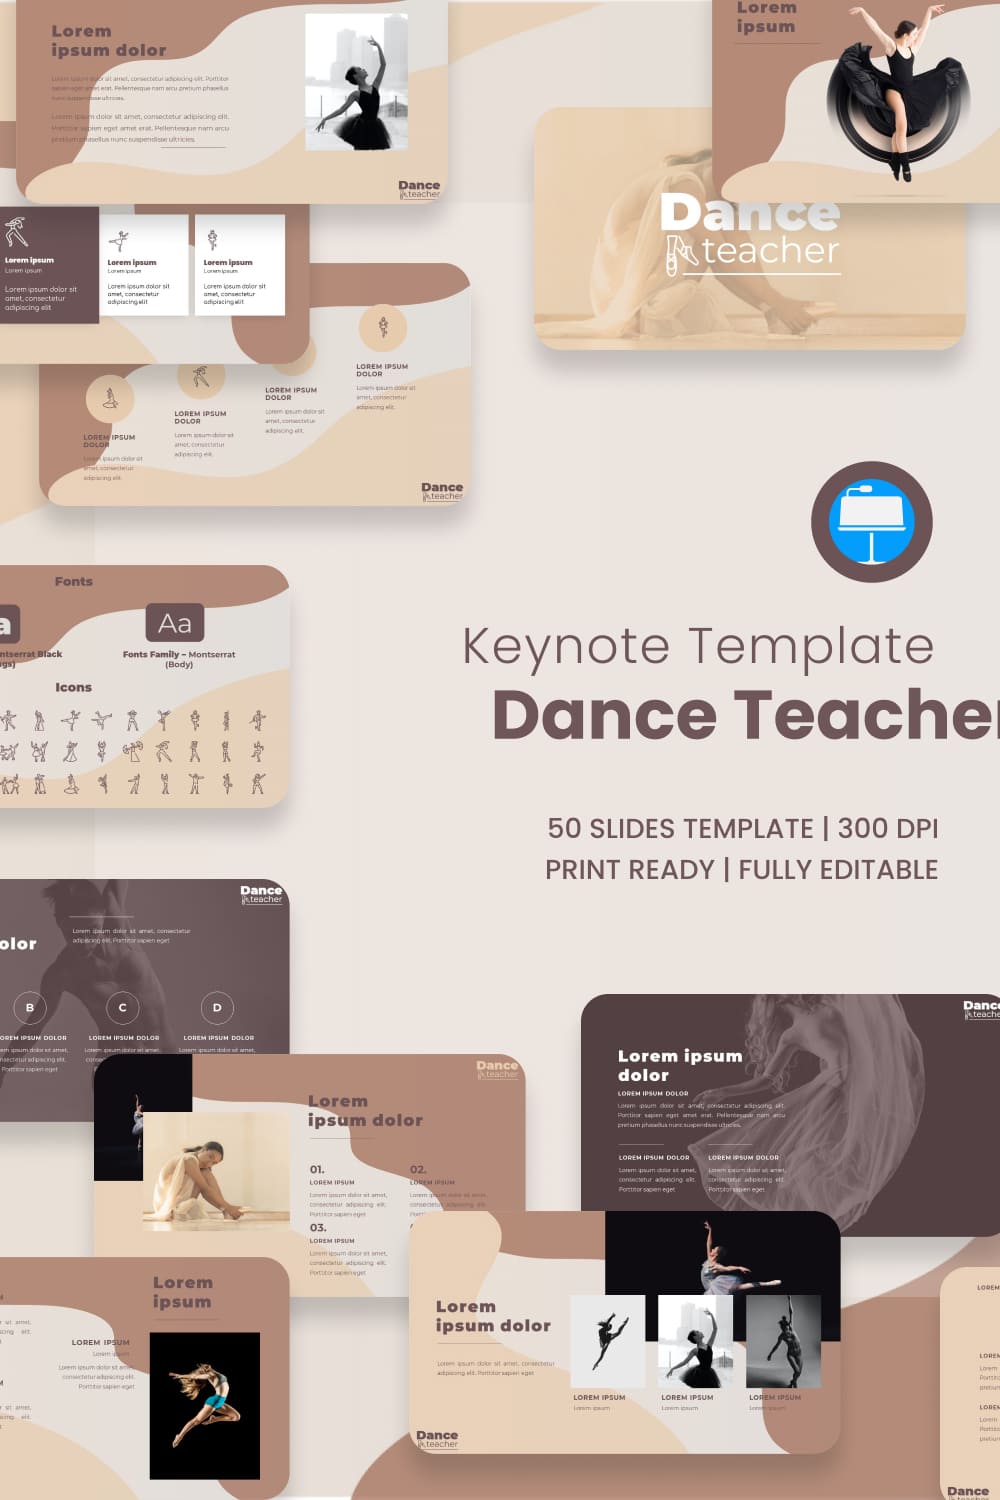 Dance Teacher Template in Key.